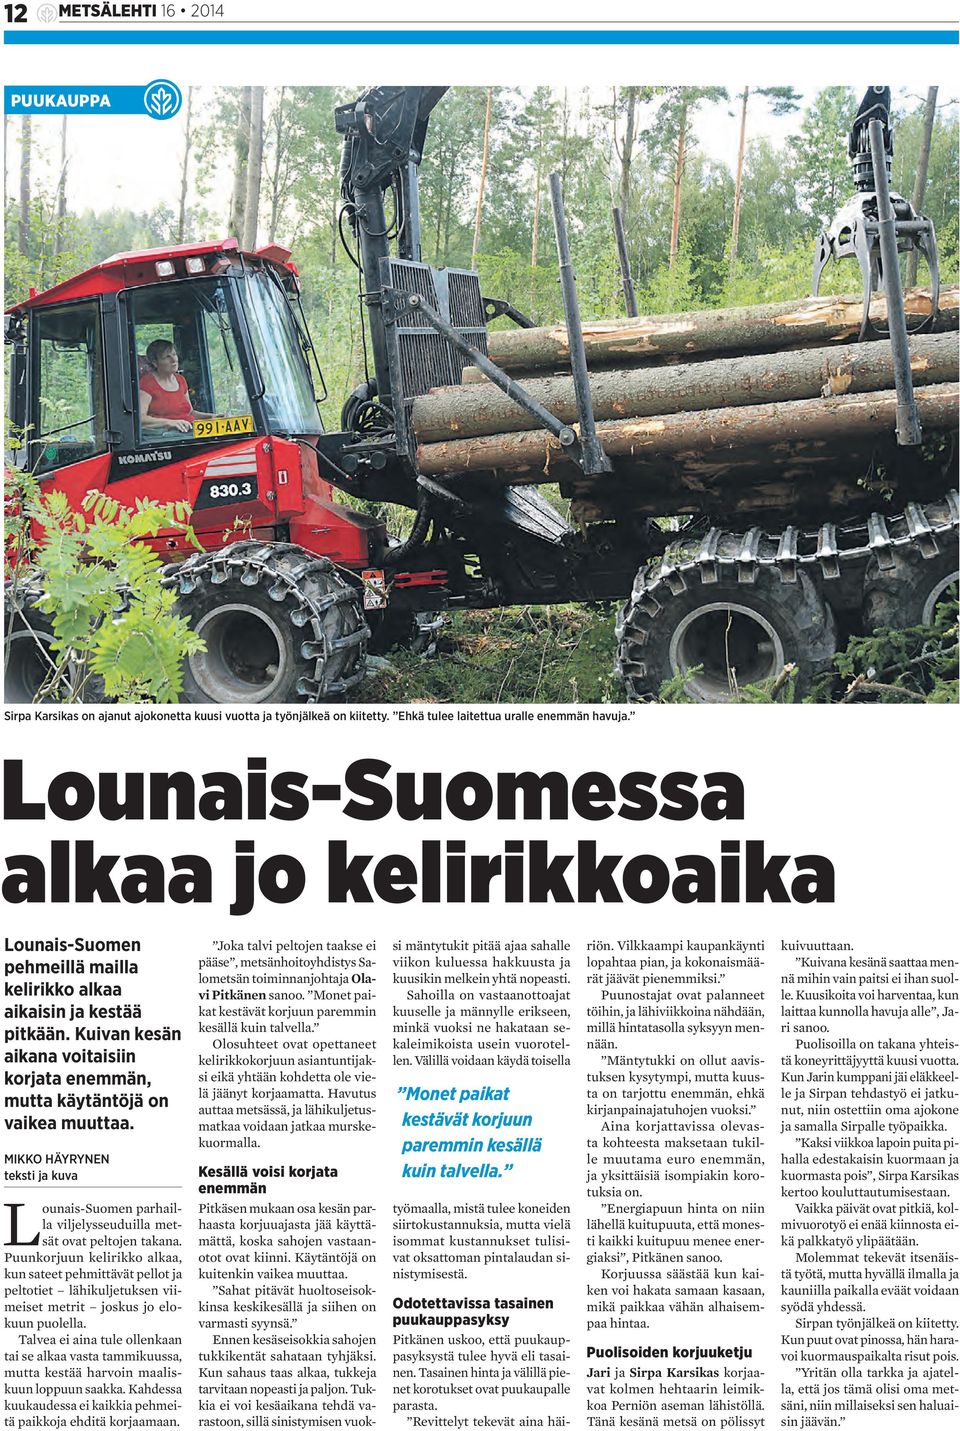 MIKKO HÄYRYNEN teksti ja kuva Lounais-Suomen parhailla viljelysseuduilla metsät ovat peltojen takana.